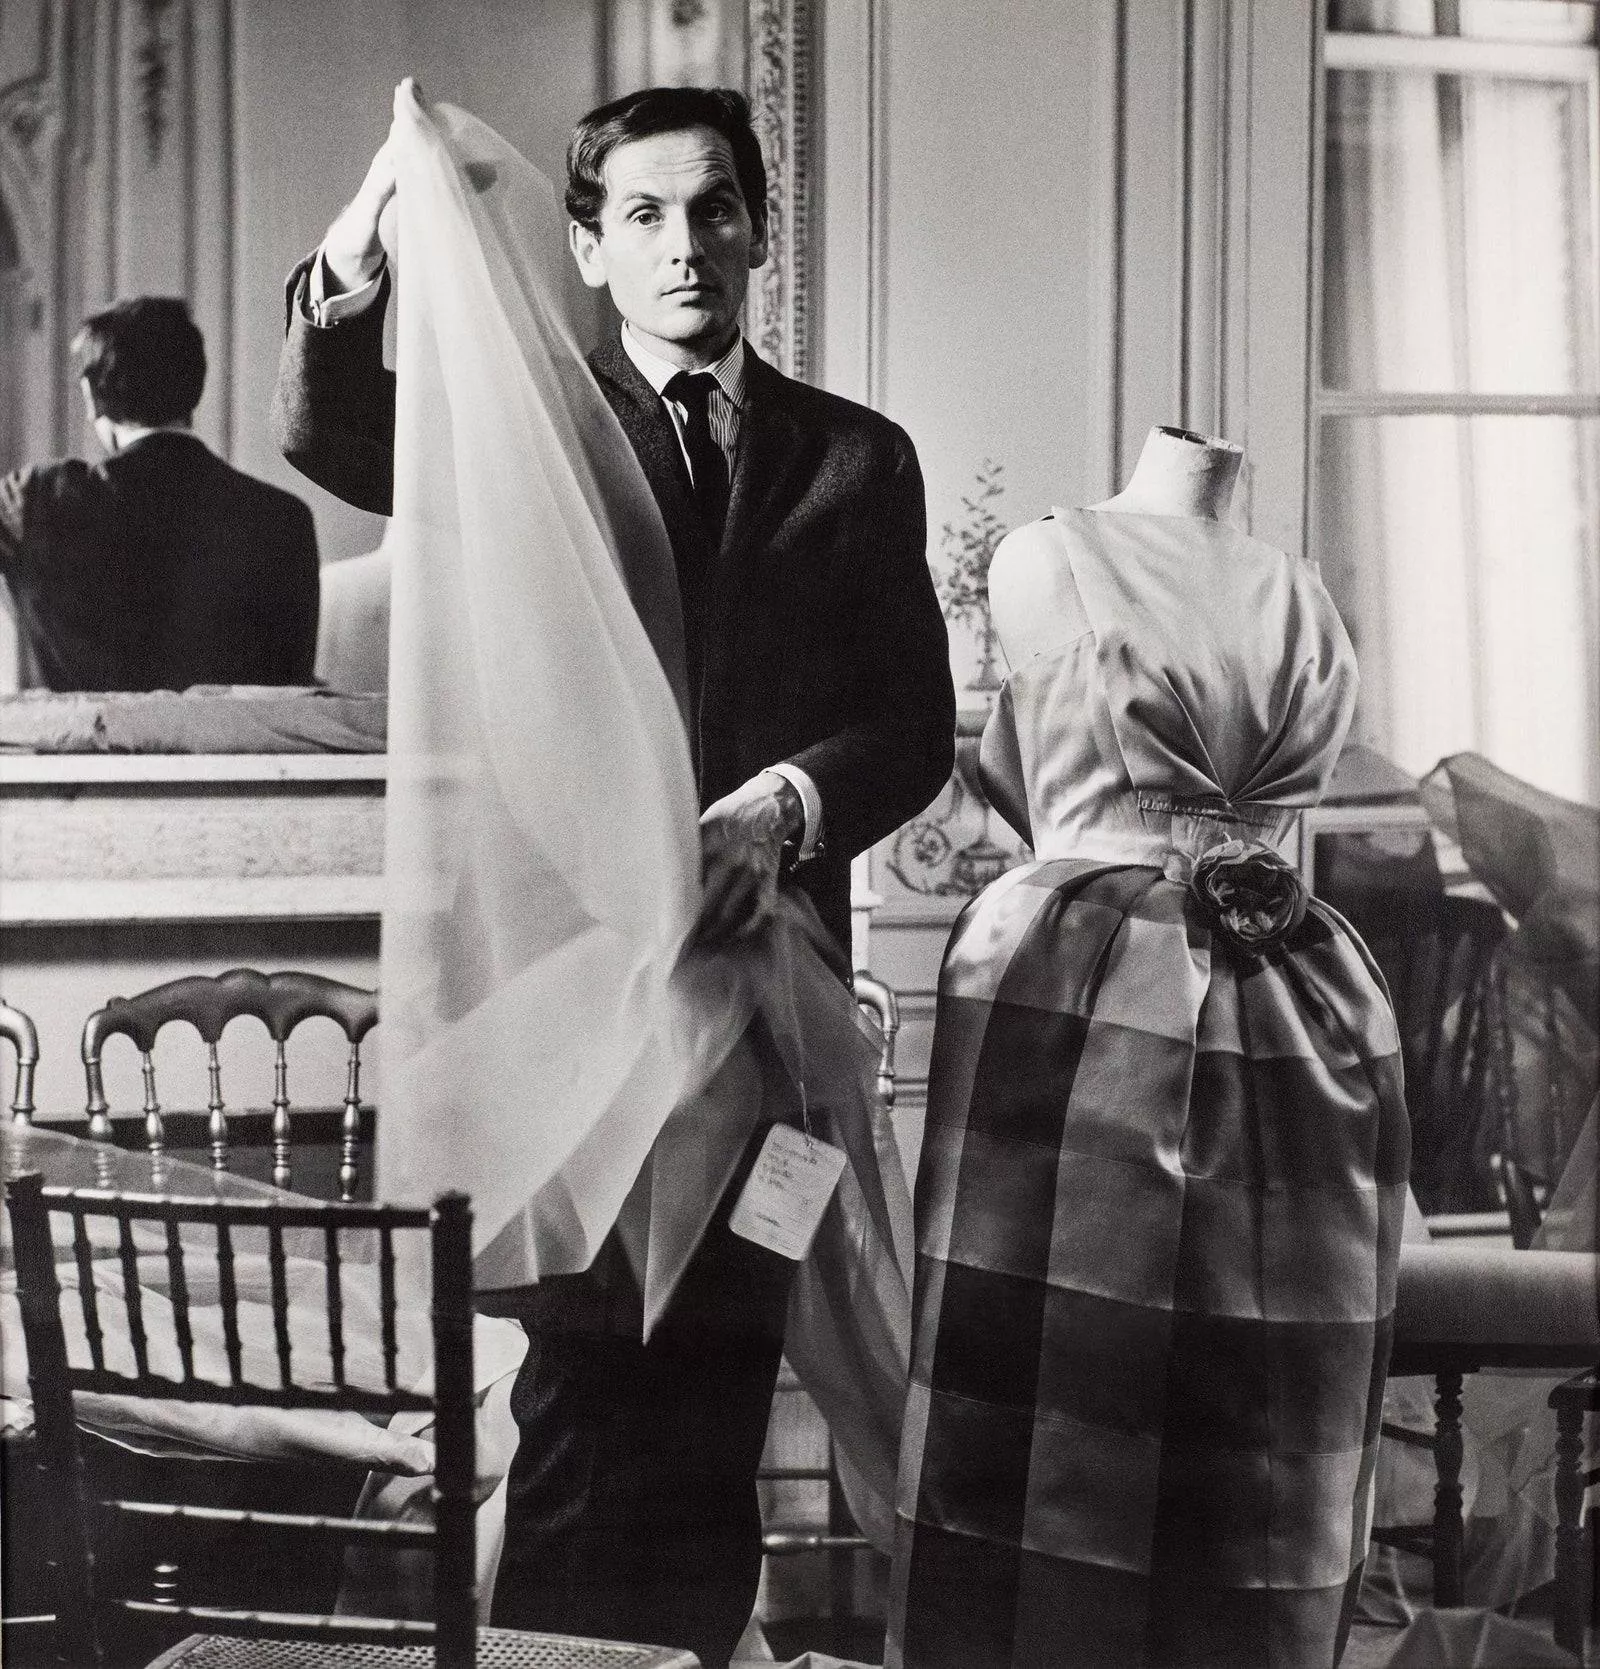 المصمّم الفرنسي Pierre Cardin يفارق الحياة عن عمر 98 عاماً